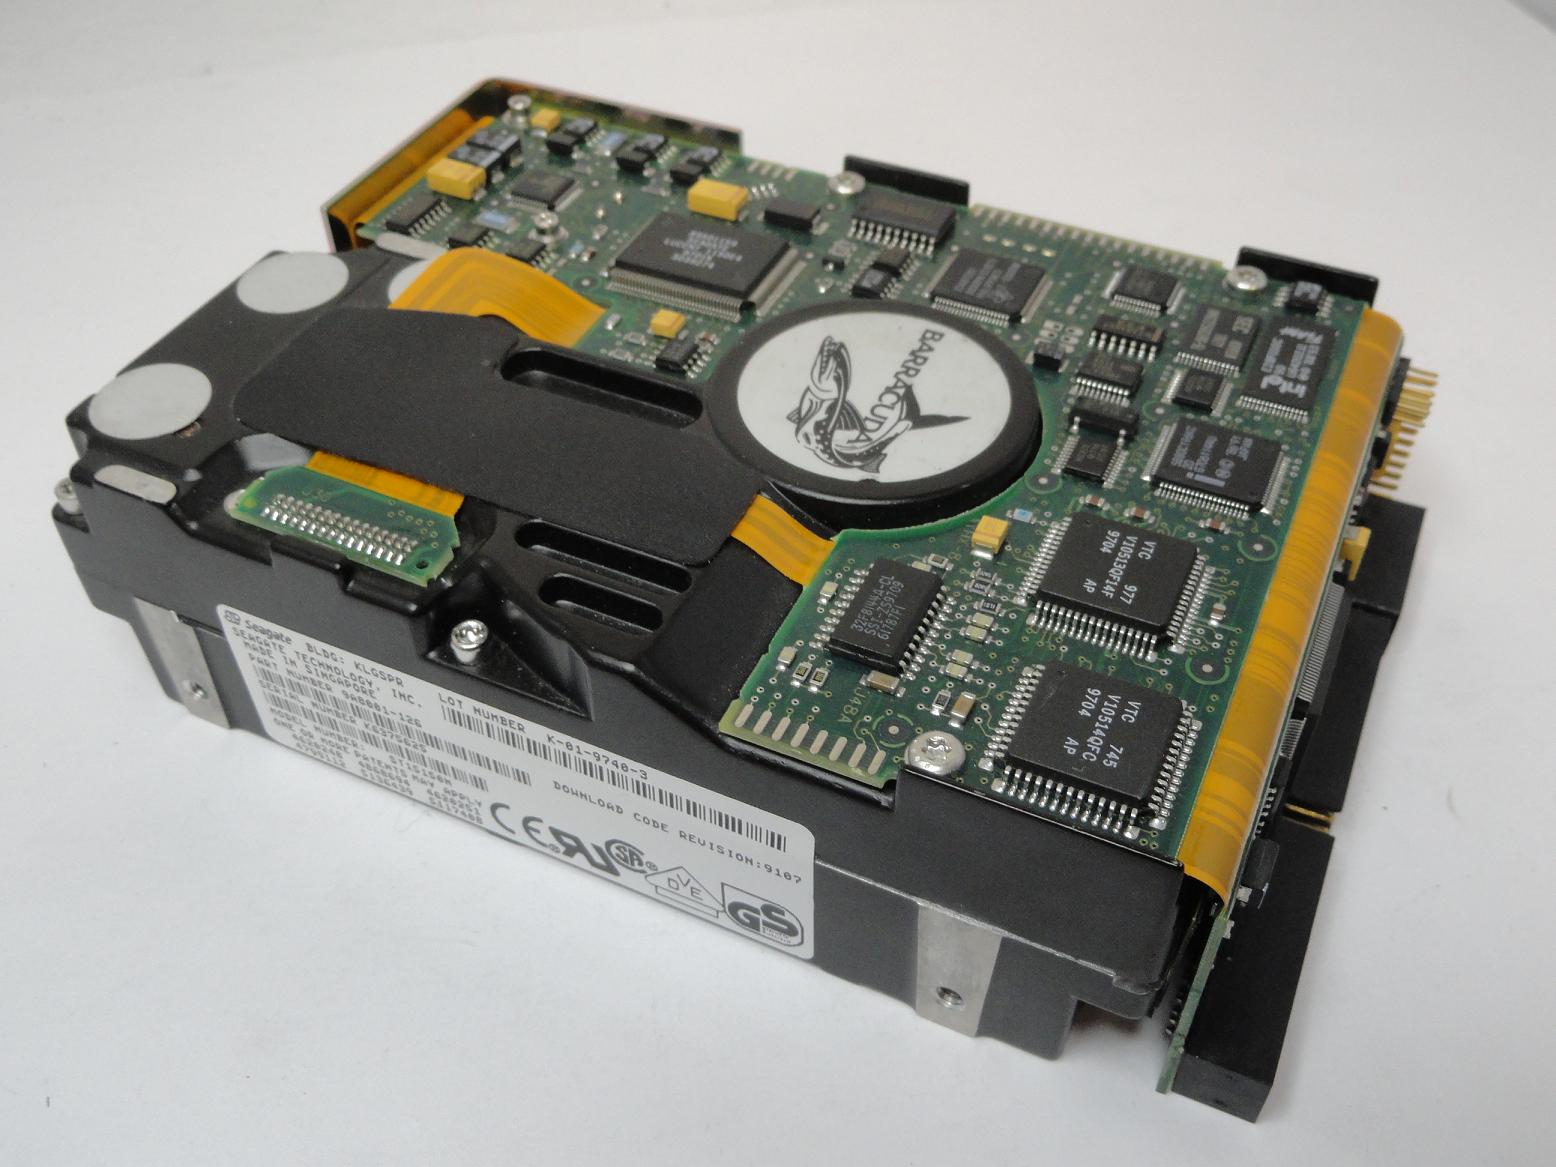 9A8001-126 - Seagate 4.3GB SCSI 50 Pin 7200rpm Full Height Barracuda HDD - Refurbished